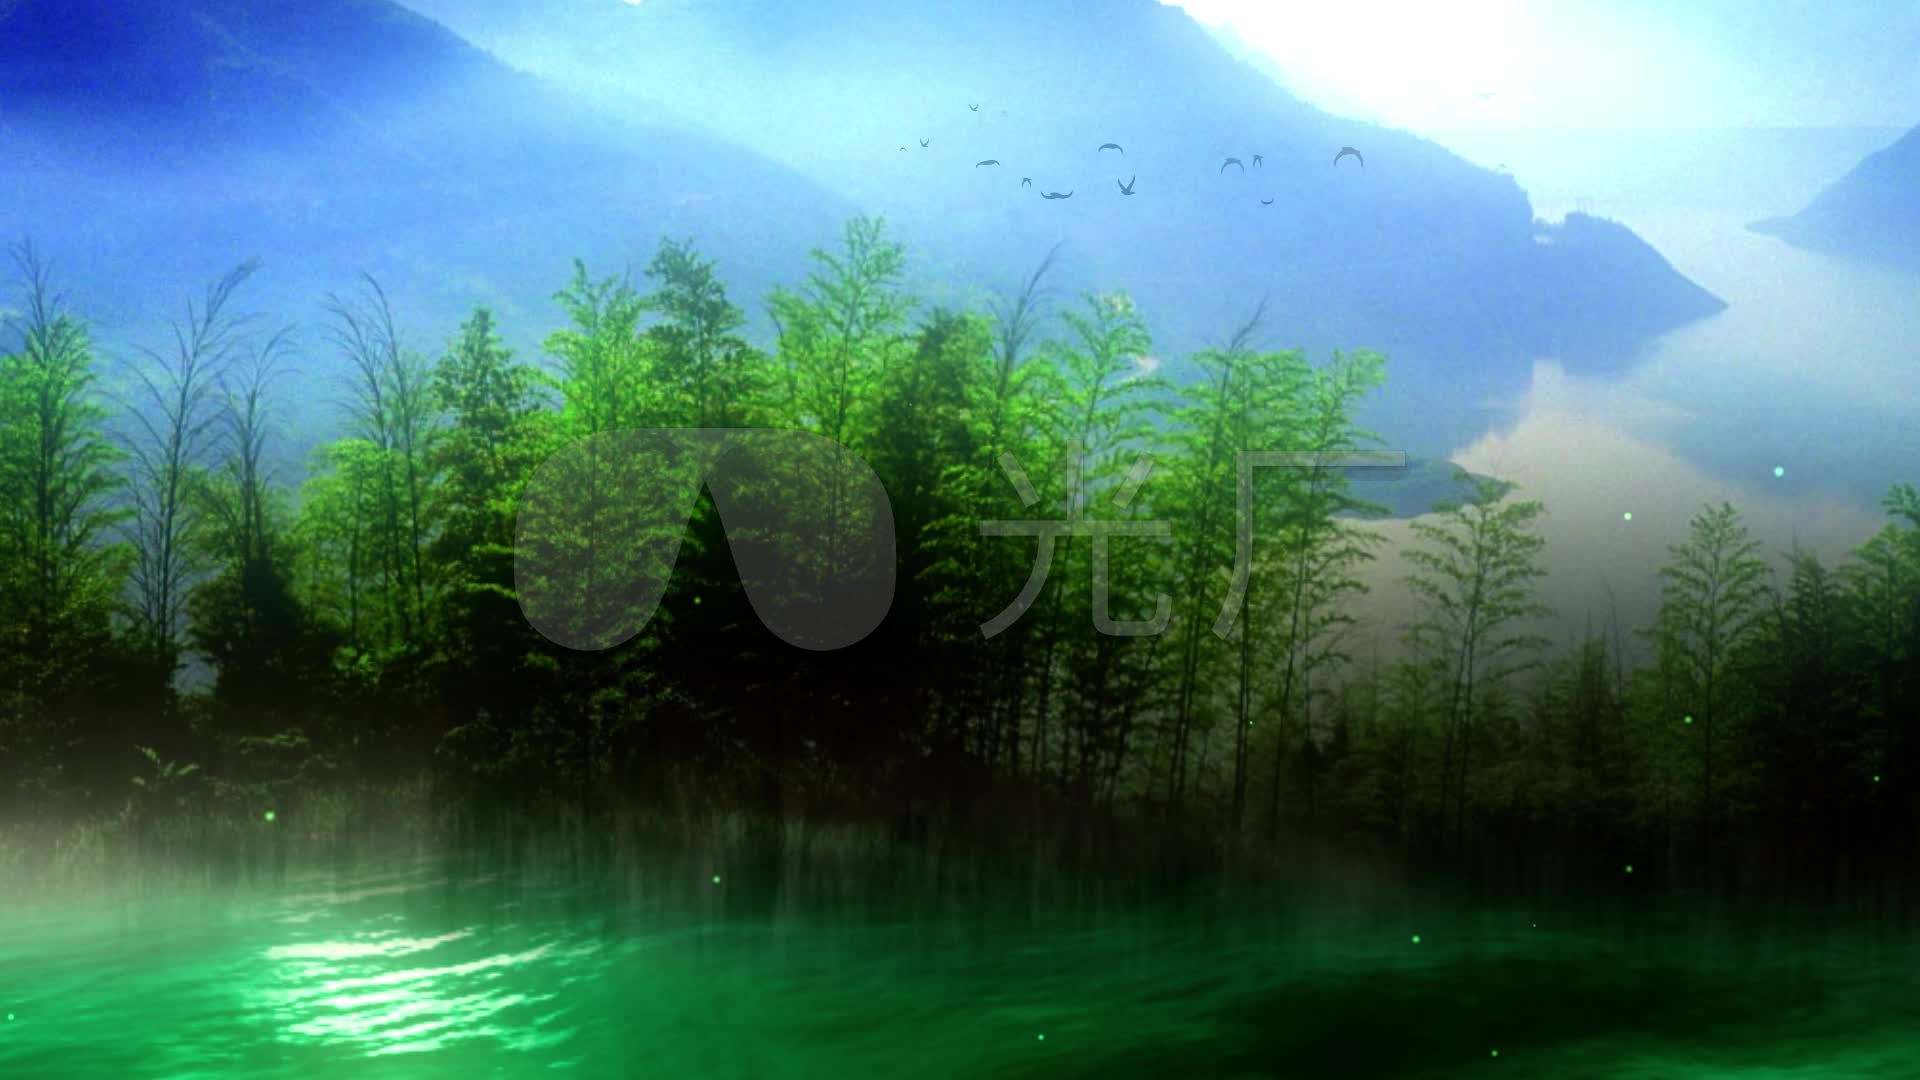 竹林意境山水风景画动态背景